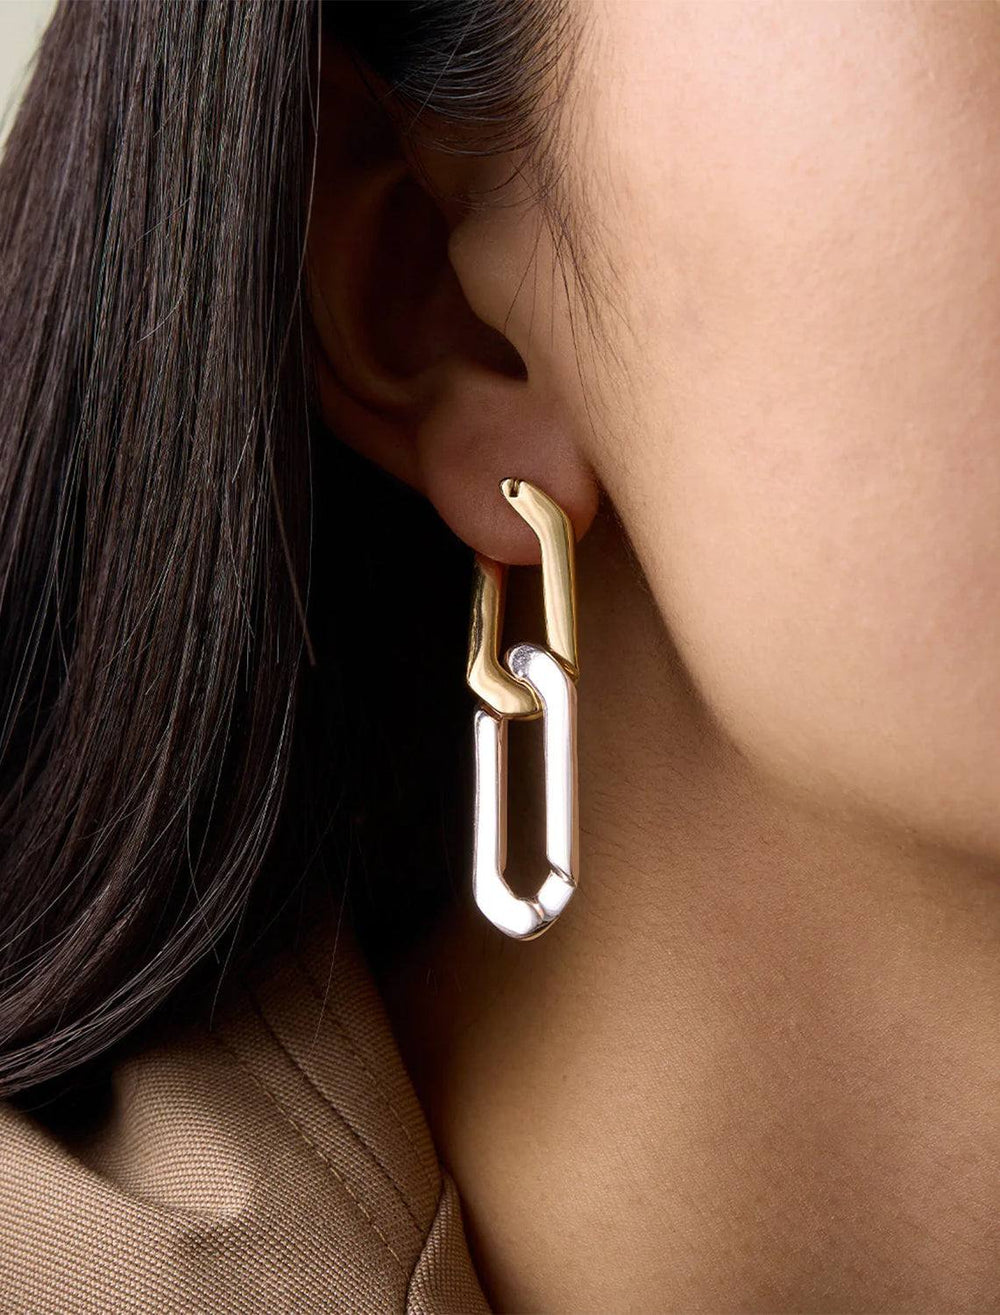 Model wearing rafael earrings in two tone